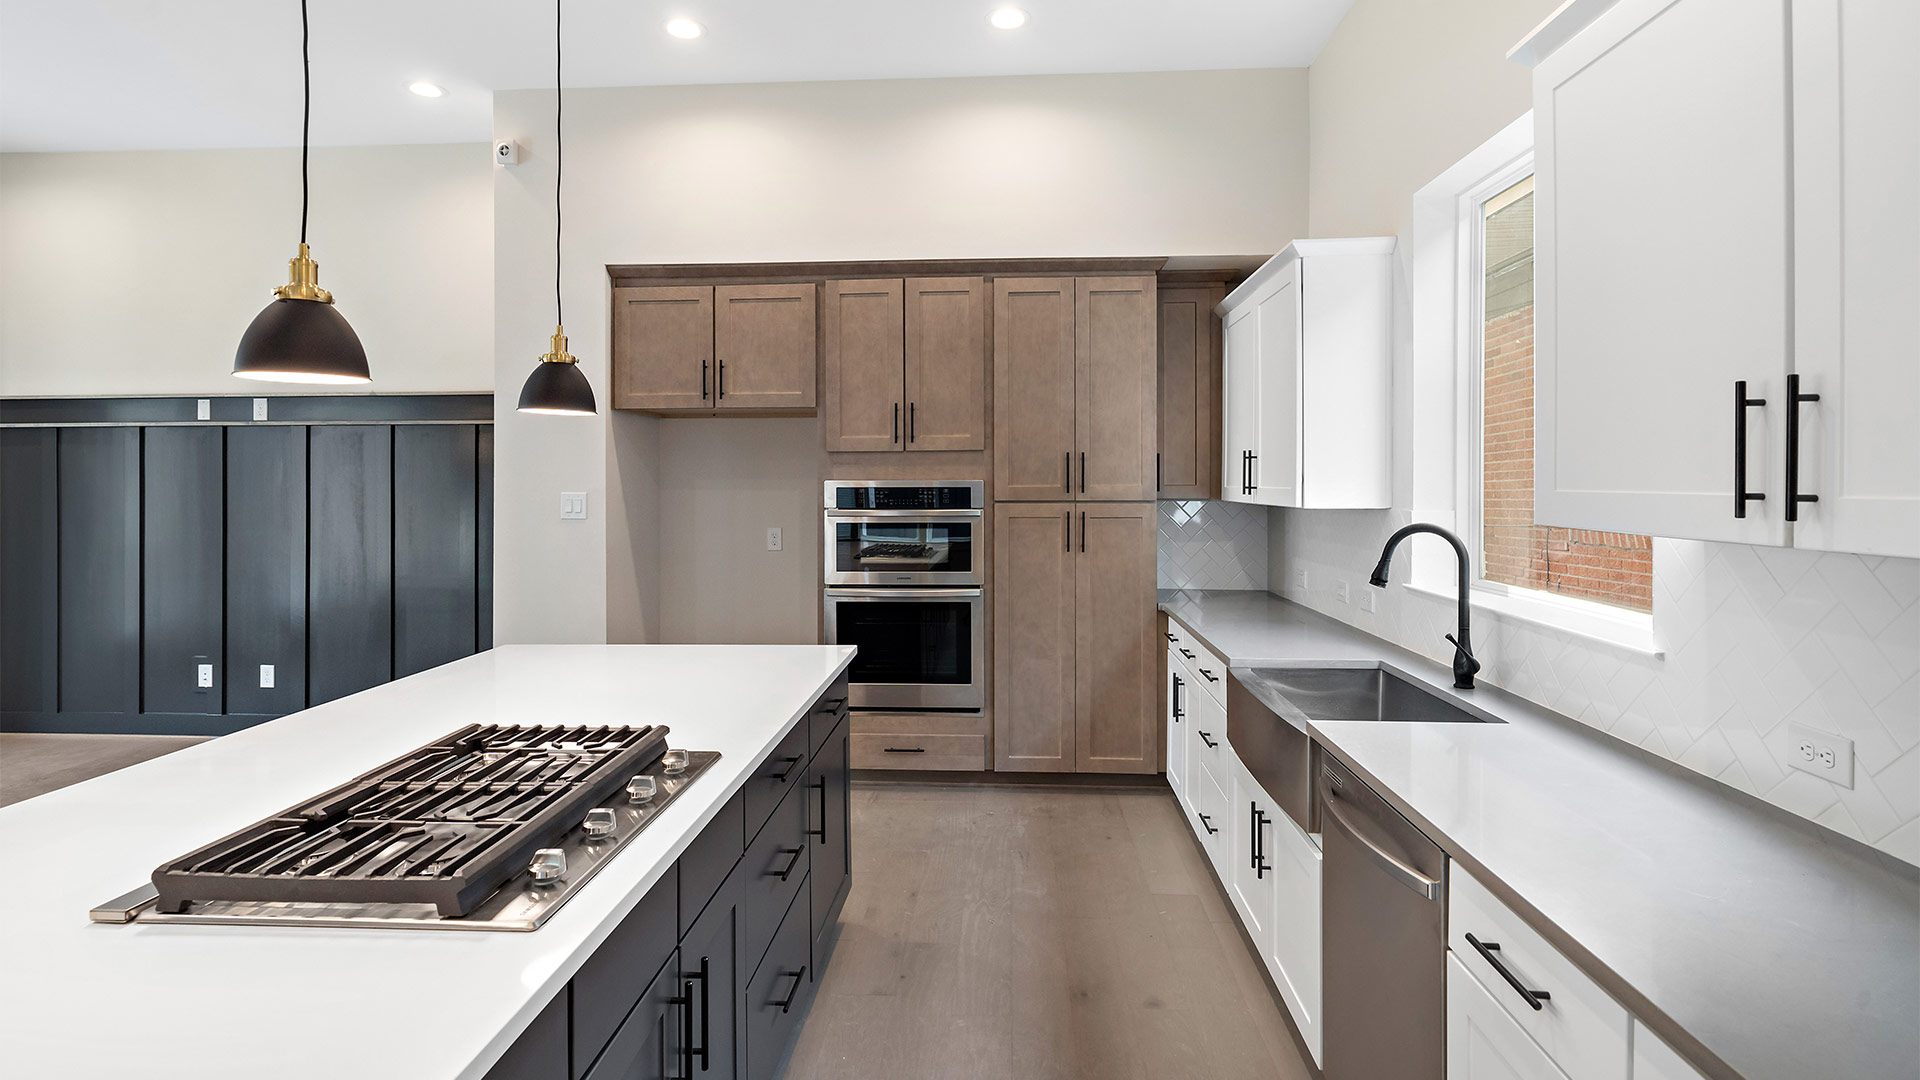 residential property kitchen interiors houston tx